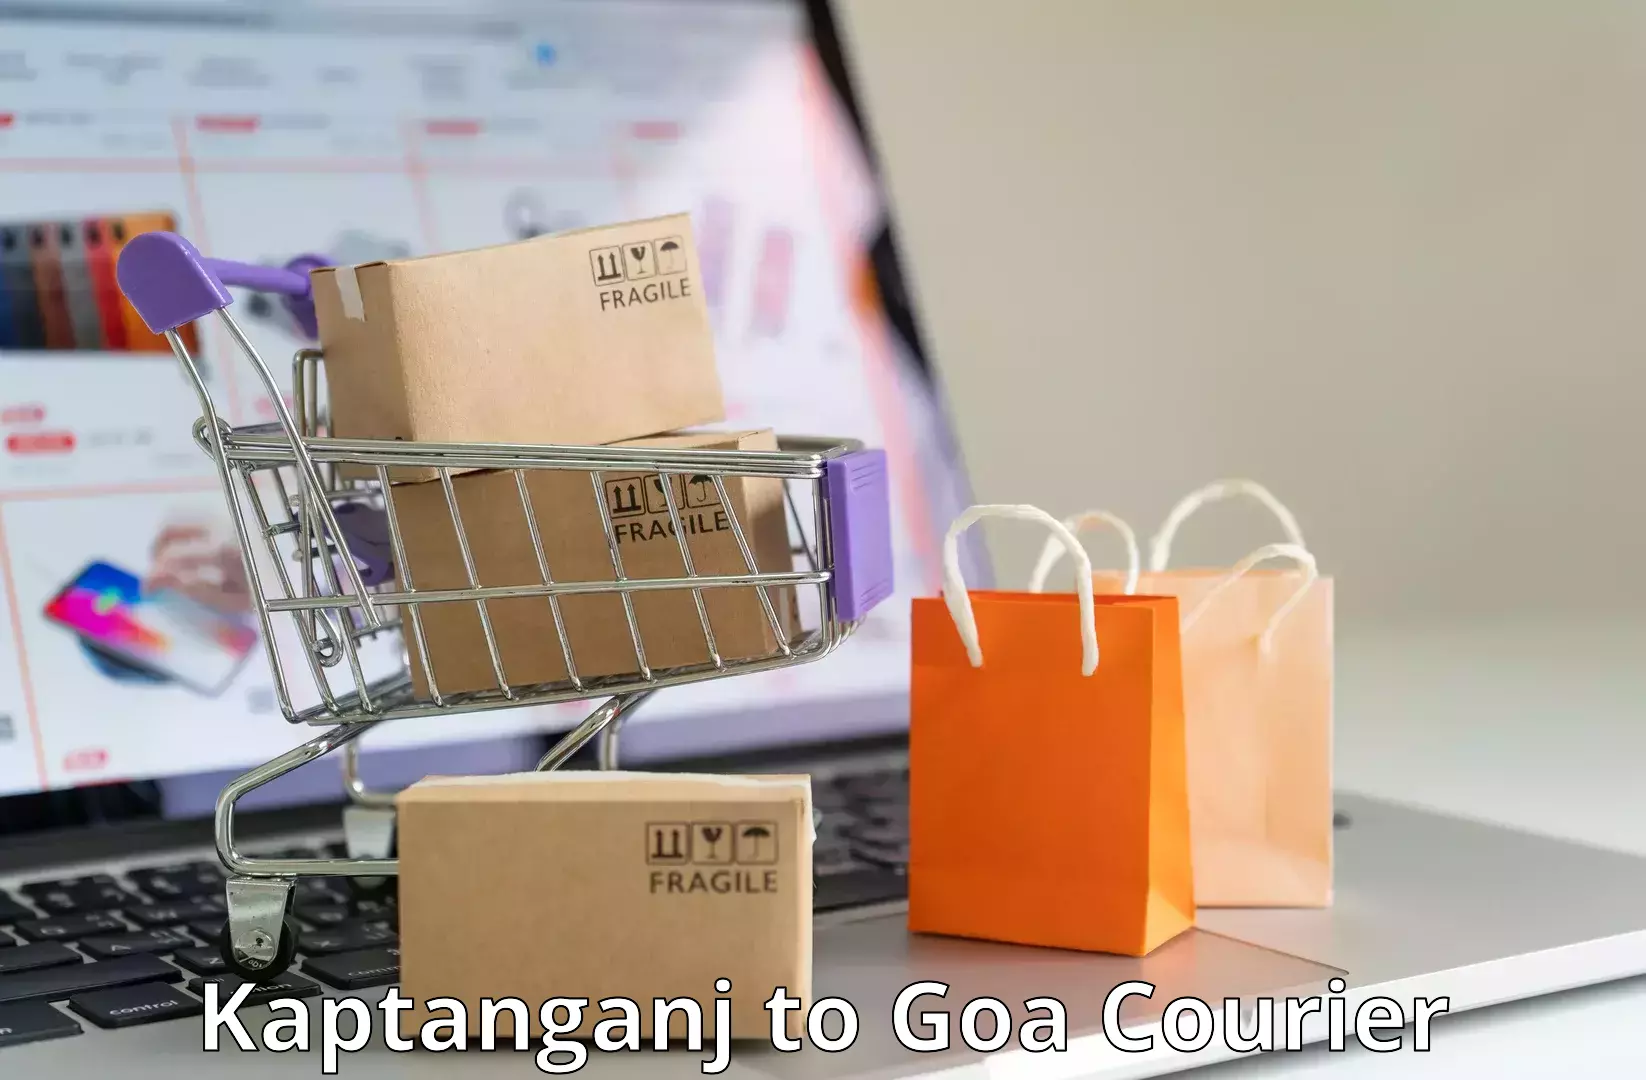 Urban courier service Kaptanganj to South Goa